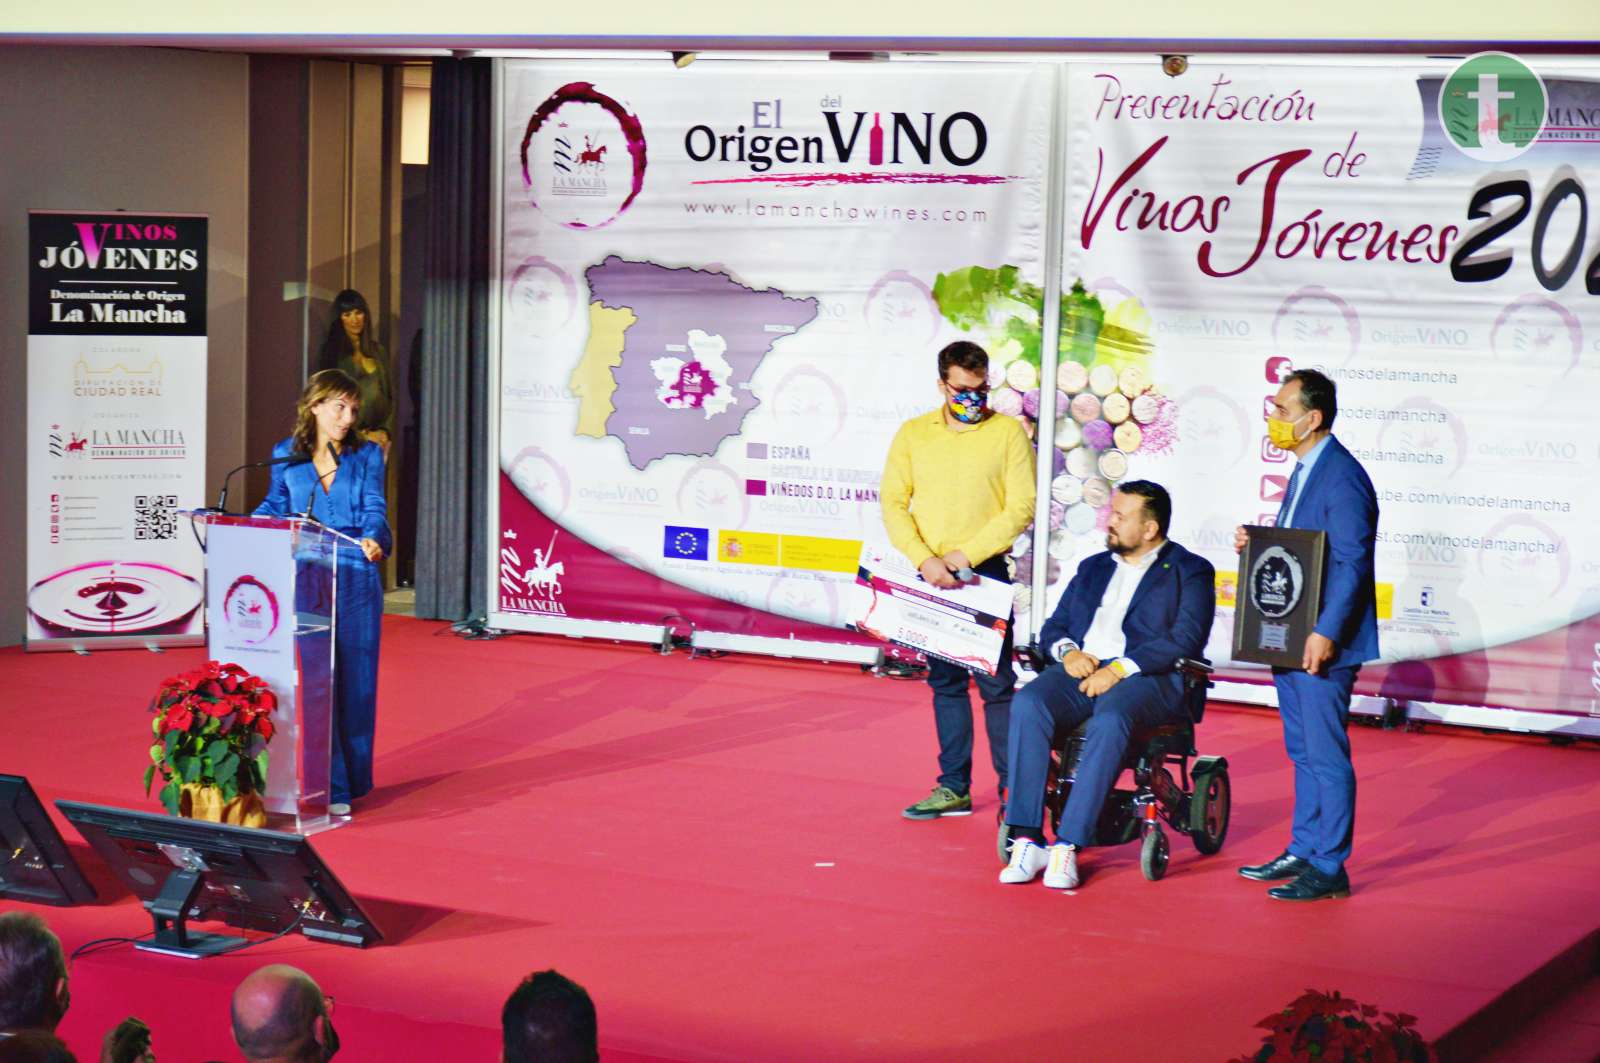 Roberto Brasero, Sandra Sánchez, María Pombo y Pedro Almodóvar reciben los Premios Solidarios 2021 de la DO La Mancha